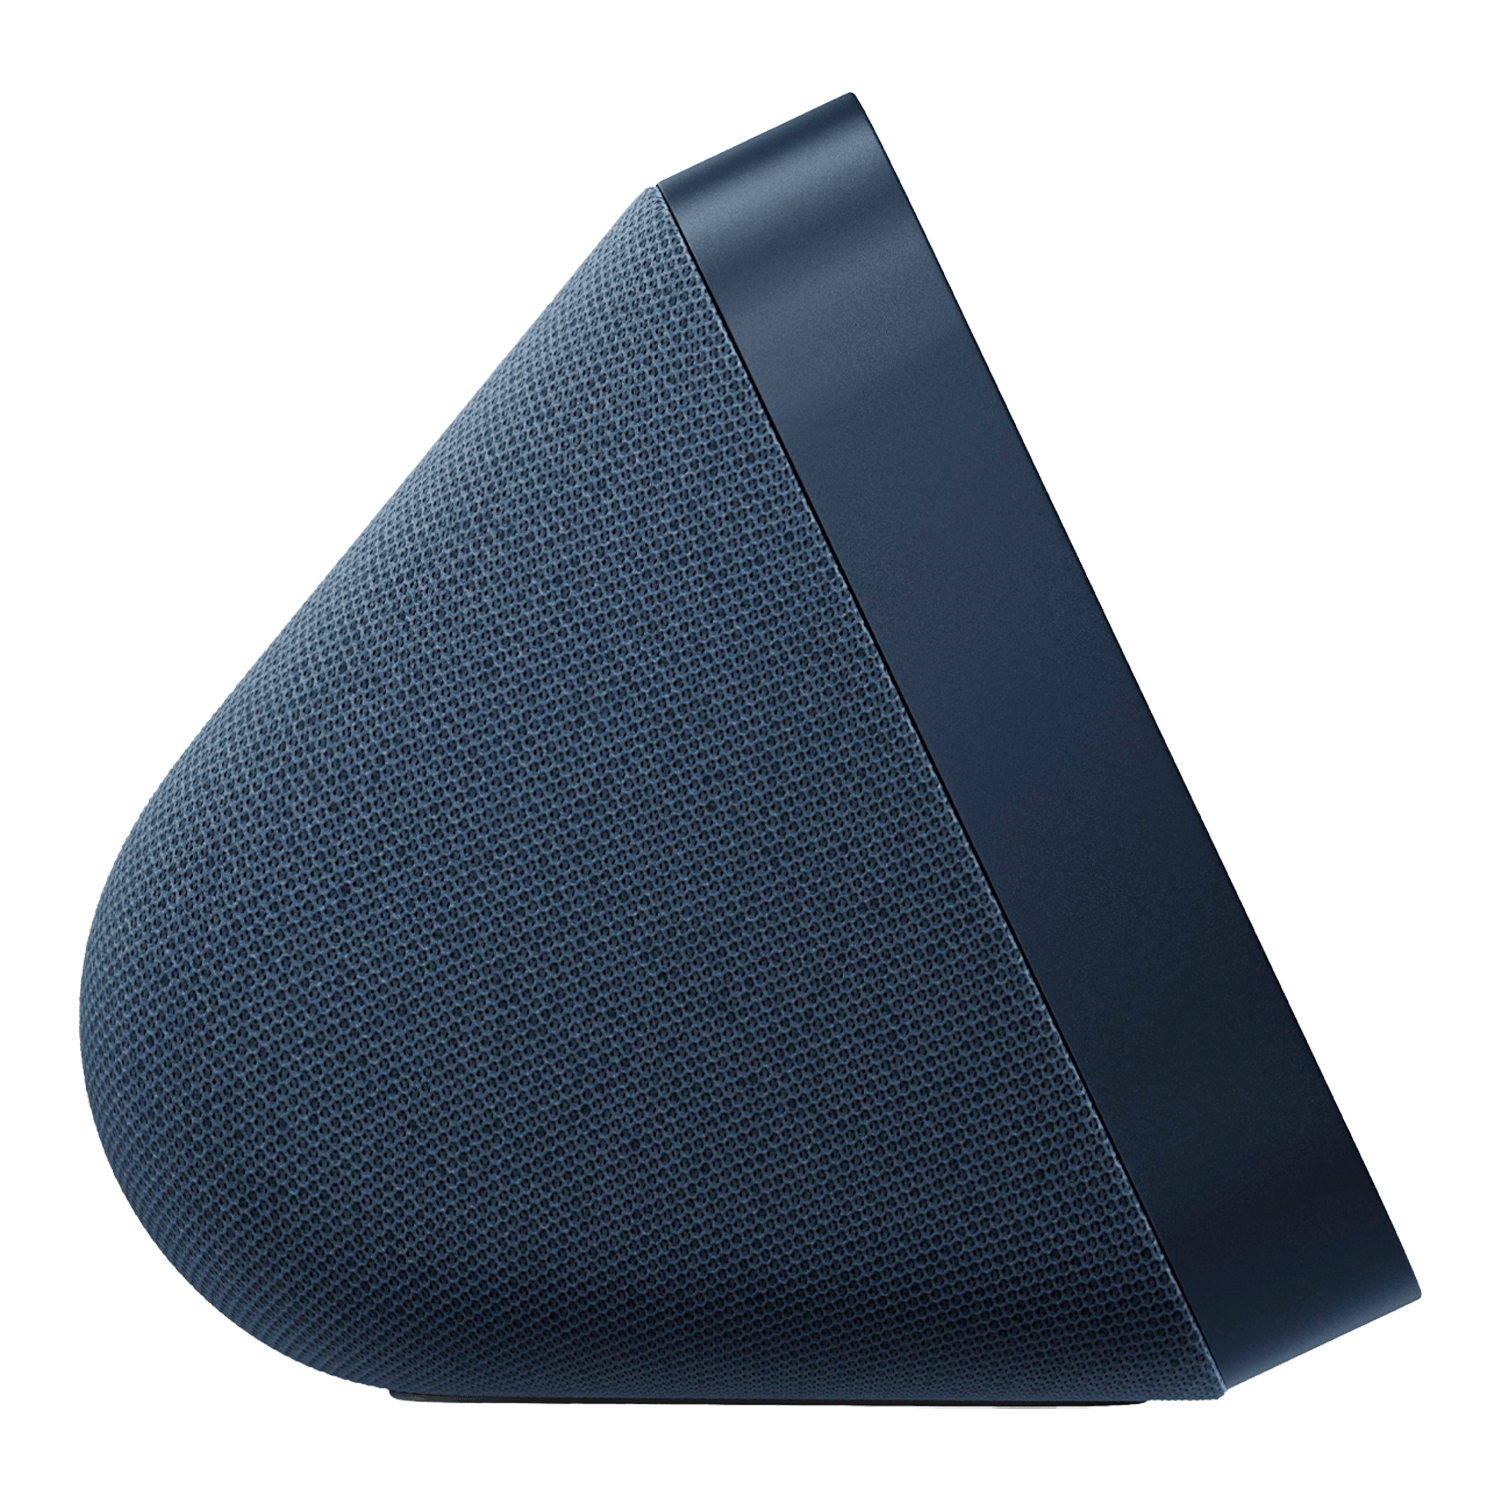 Amazon Echo Show 5 Smart Display 5.5" 2ª Geração Alexa - Deep Sea Blue